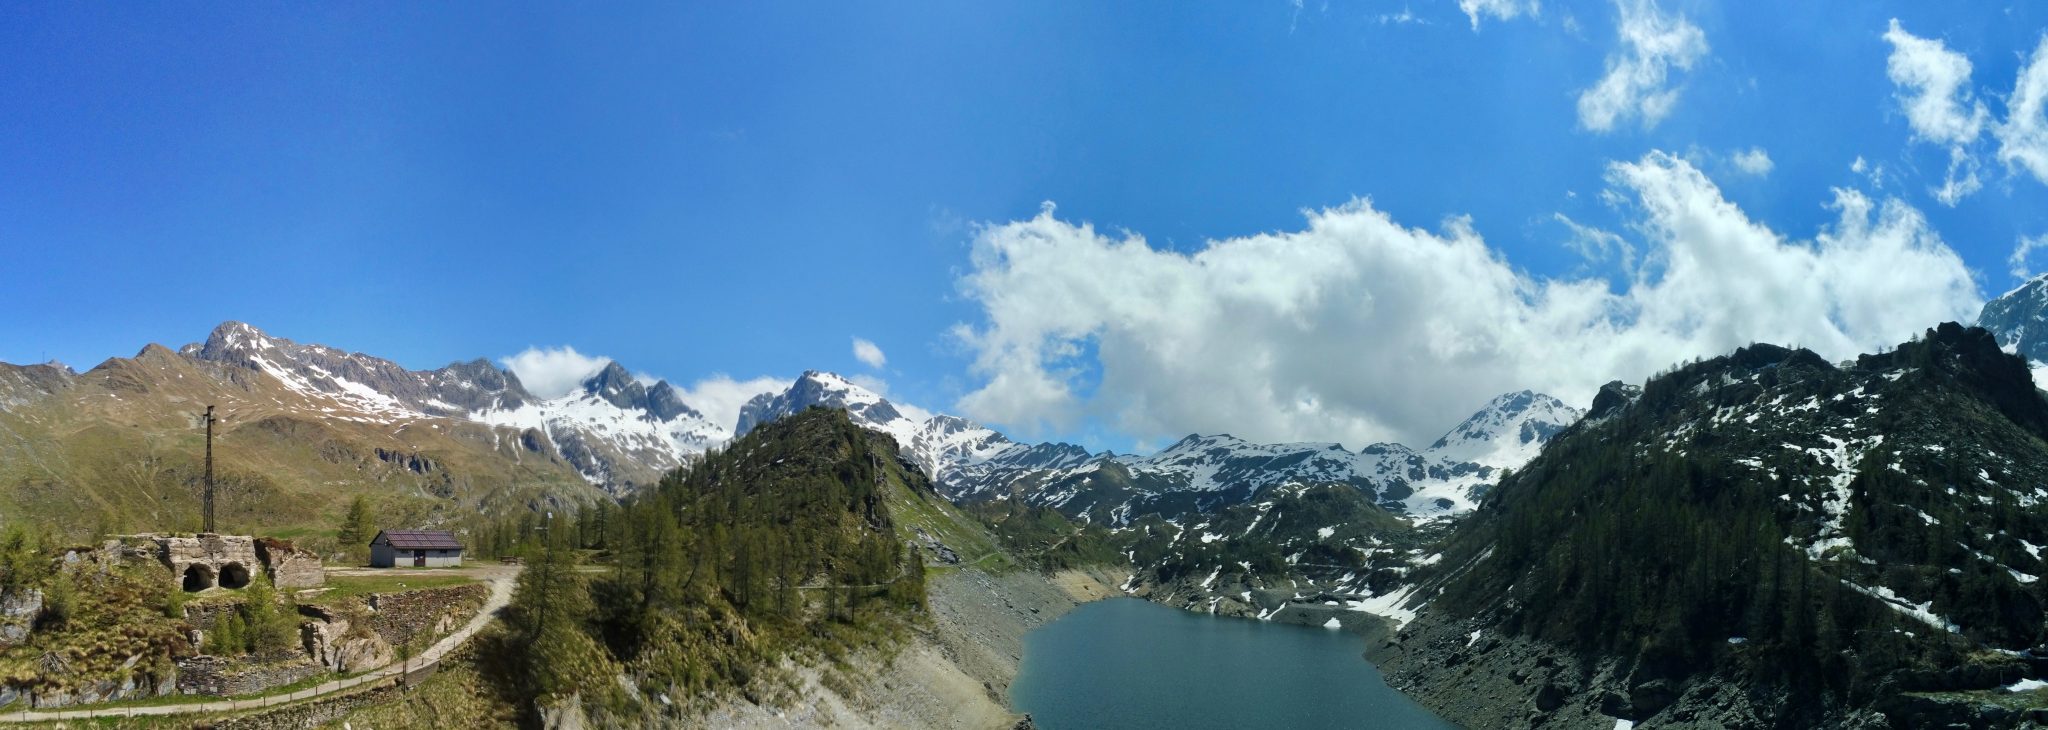 18 - Panoramica sul lago dal drone